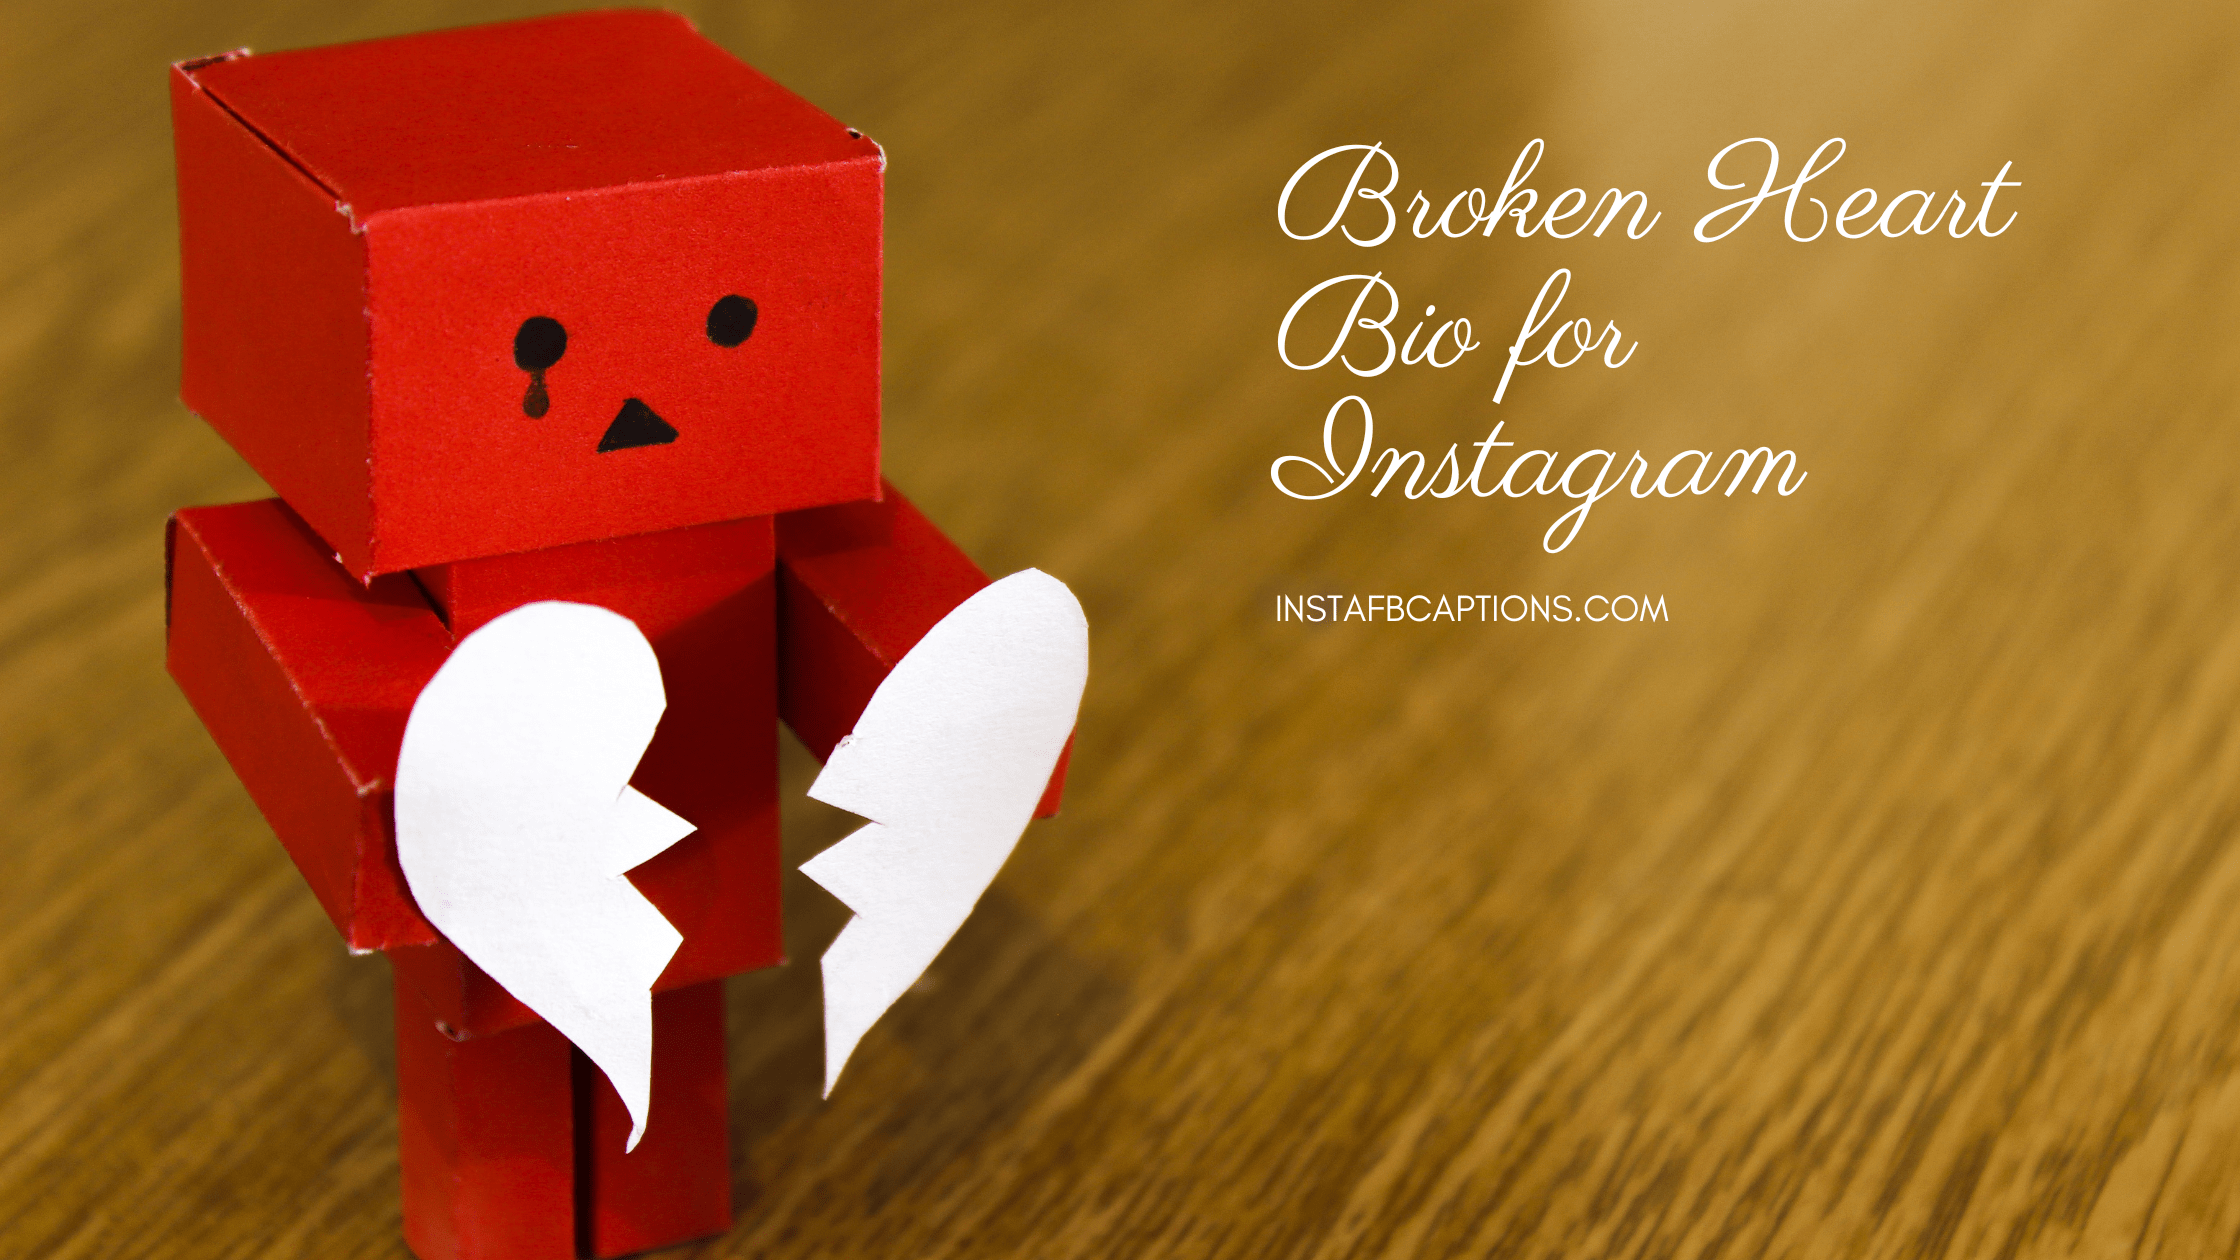 Broken Heart Bio For Instagram  - Broken Heart Bio for Instagram - [New] Broken Heart Bios for Instagram in 2023